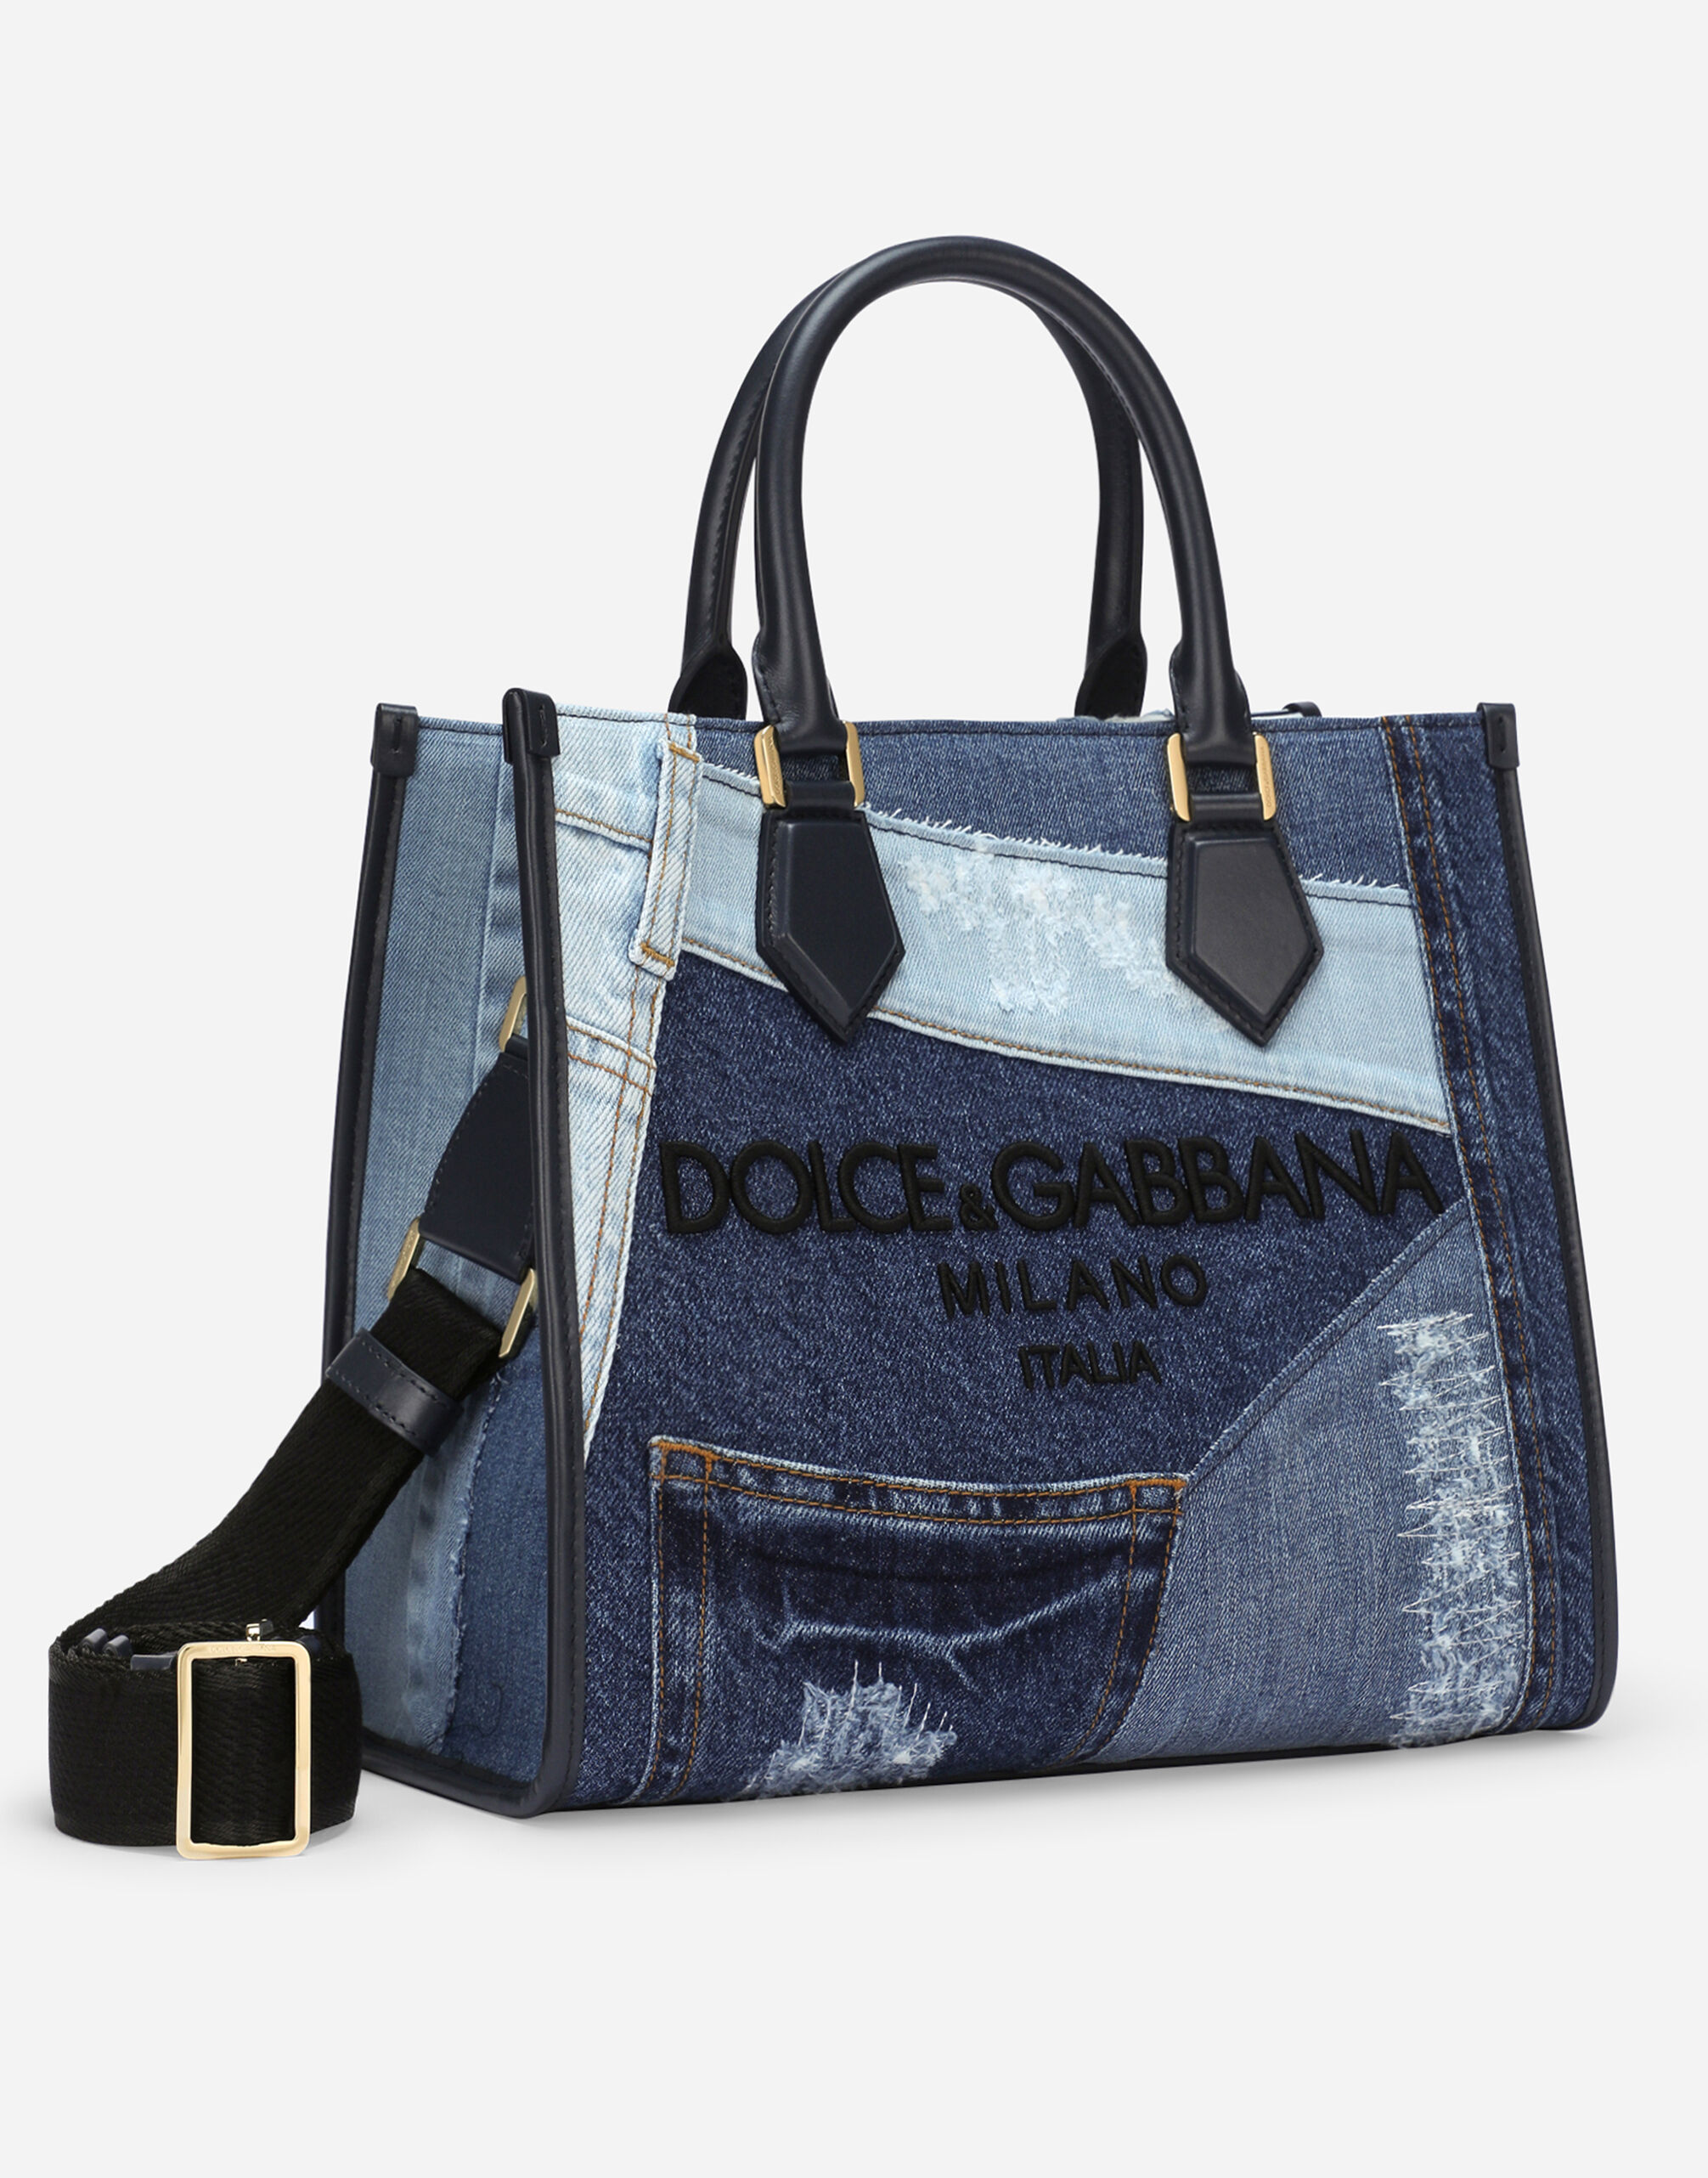 Dolce & Gabbana Handbags - Lampoo